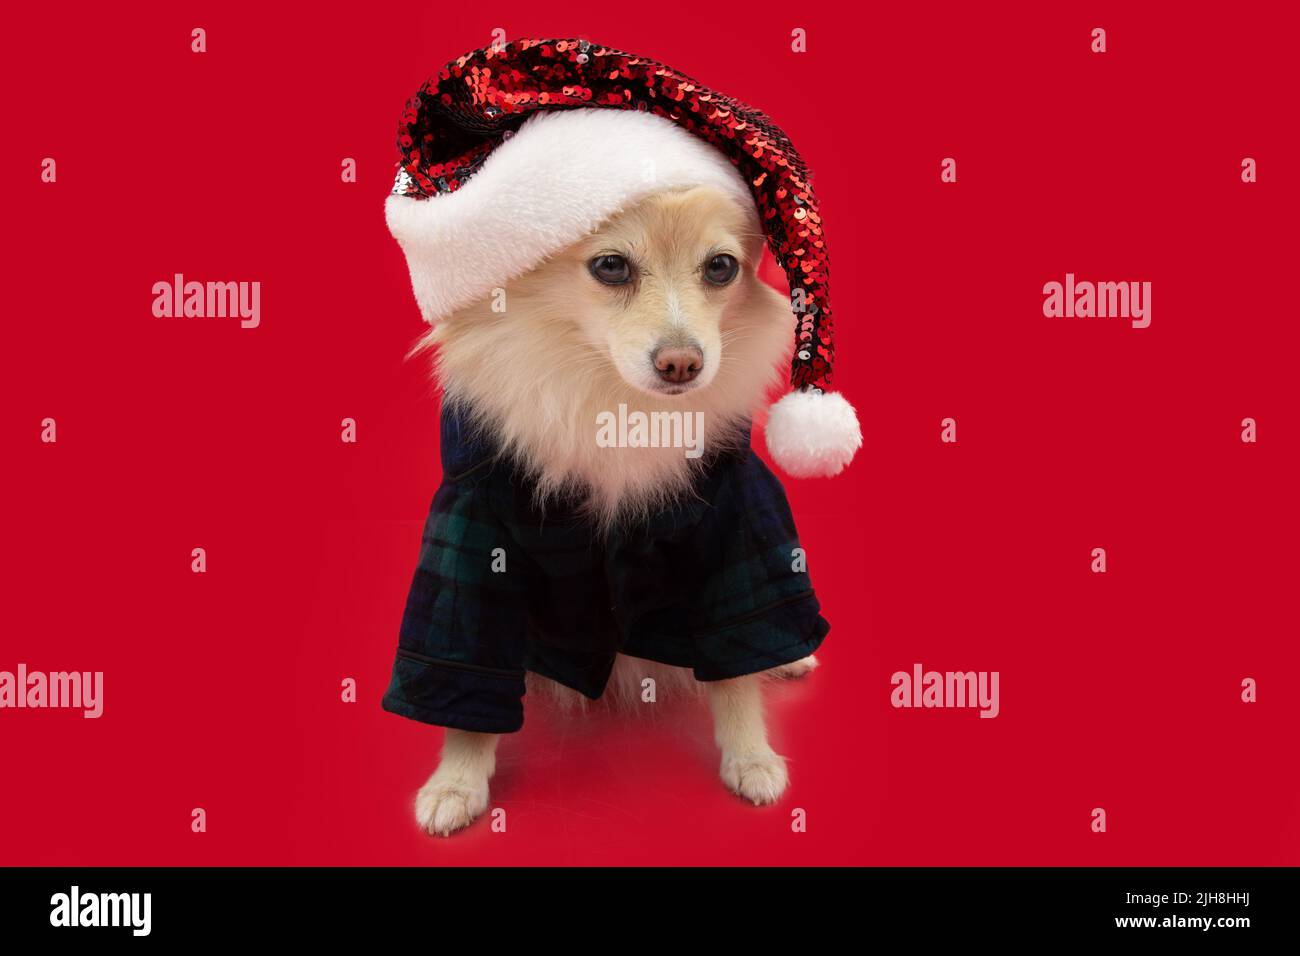 Perro de Pomerania que celebra la navidad con una pijama a cuadros y un sombrero de santa claus. Aislado sobre fondo rojo Foto de stock